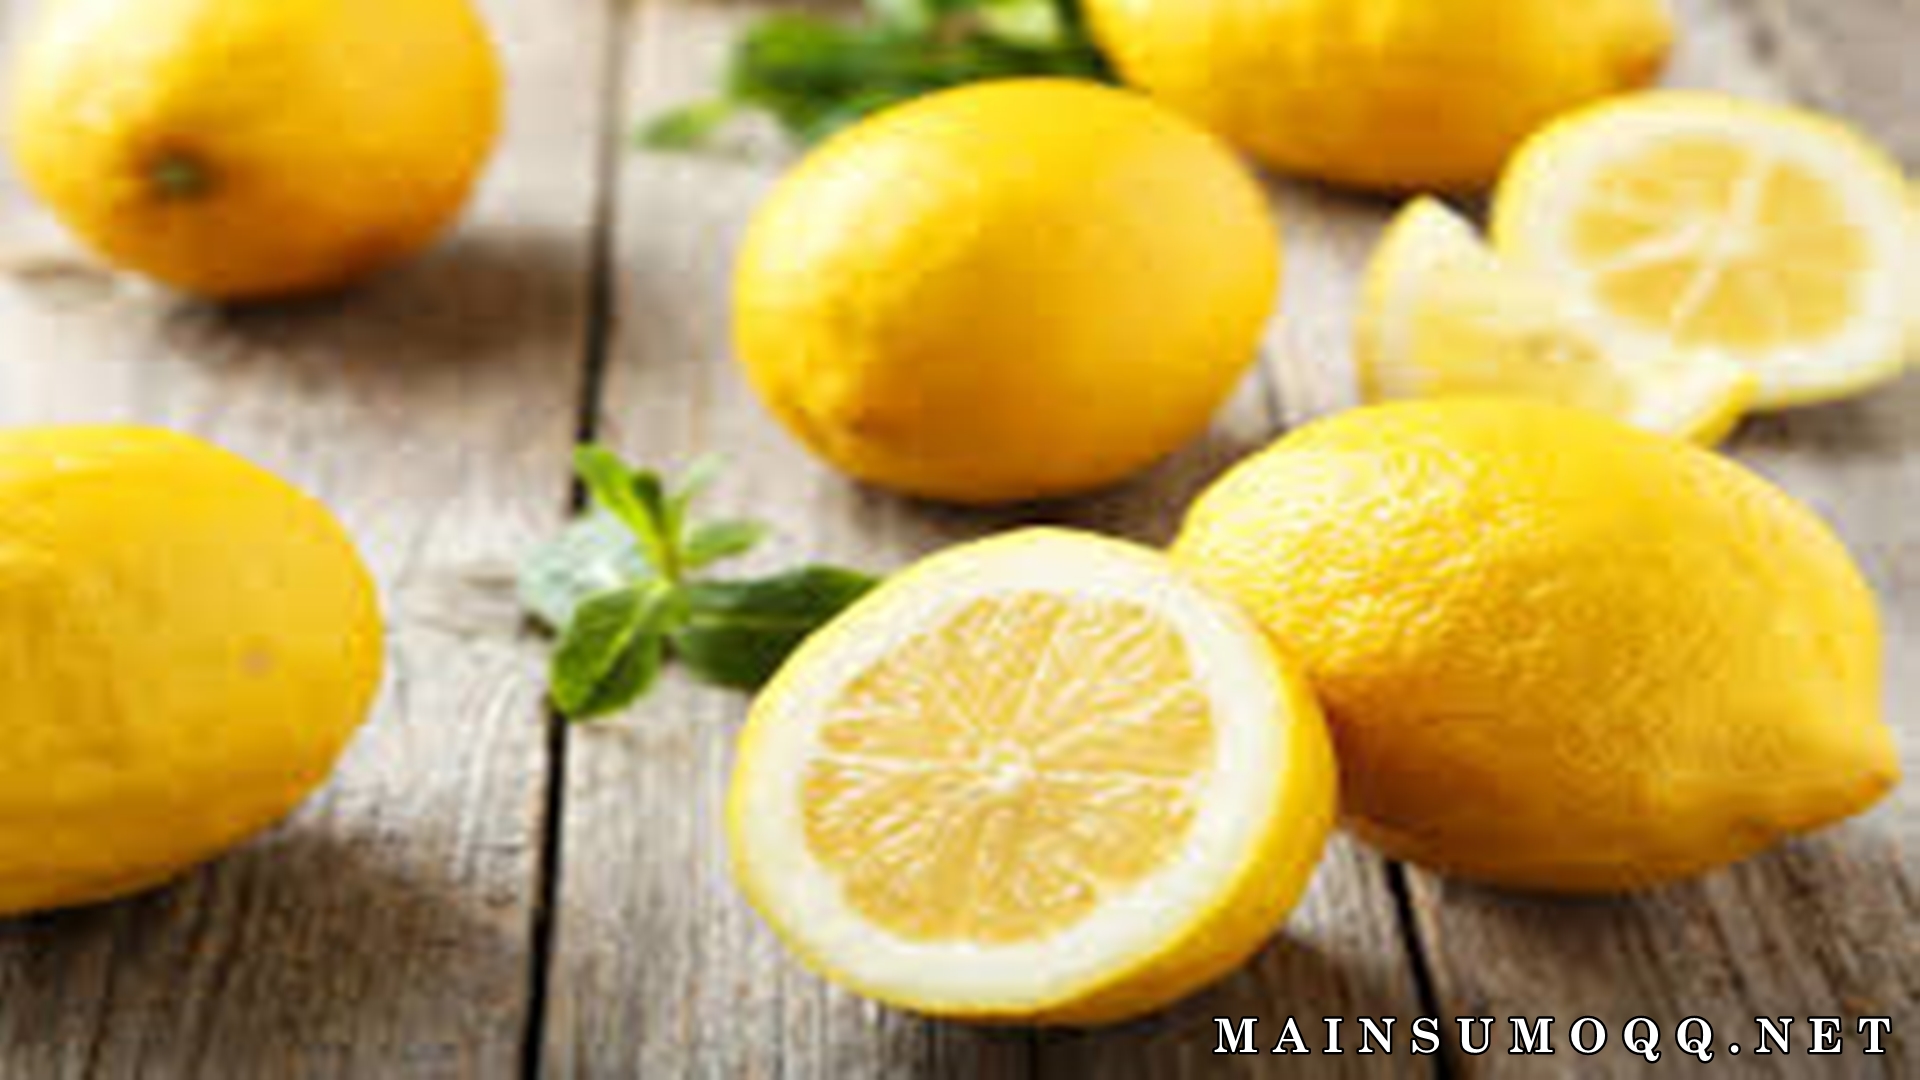 Manfaat Minum Air lemon : Cegah Penuaan Dini